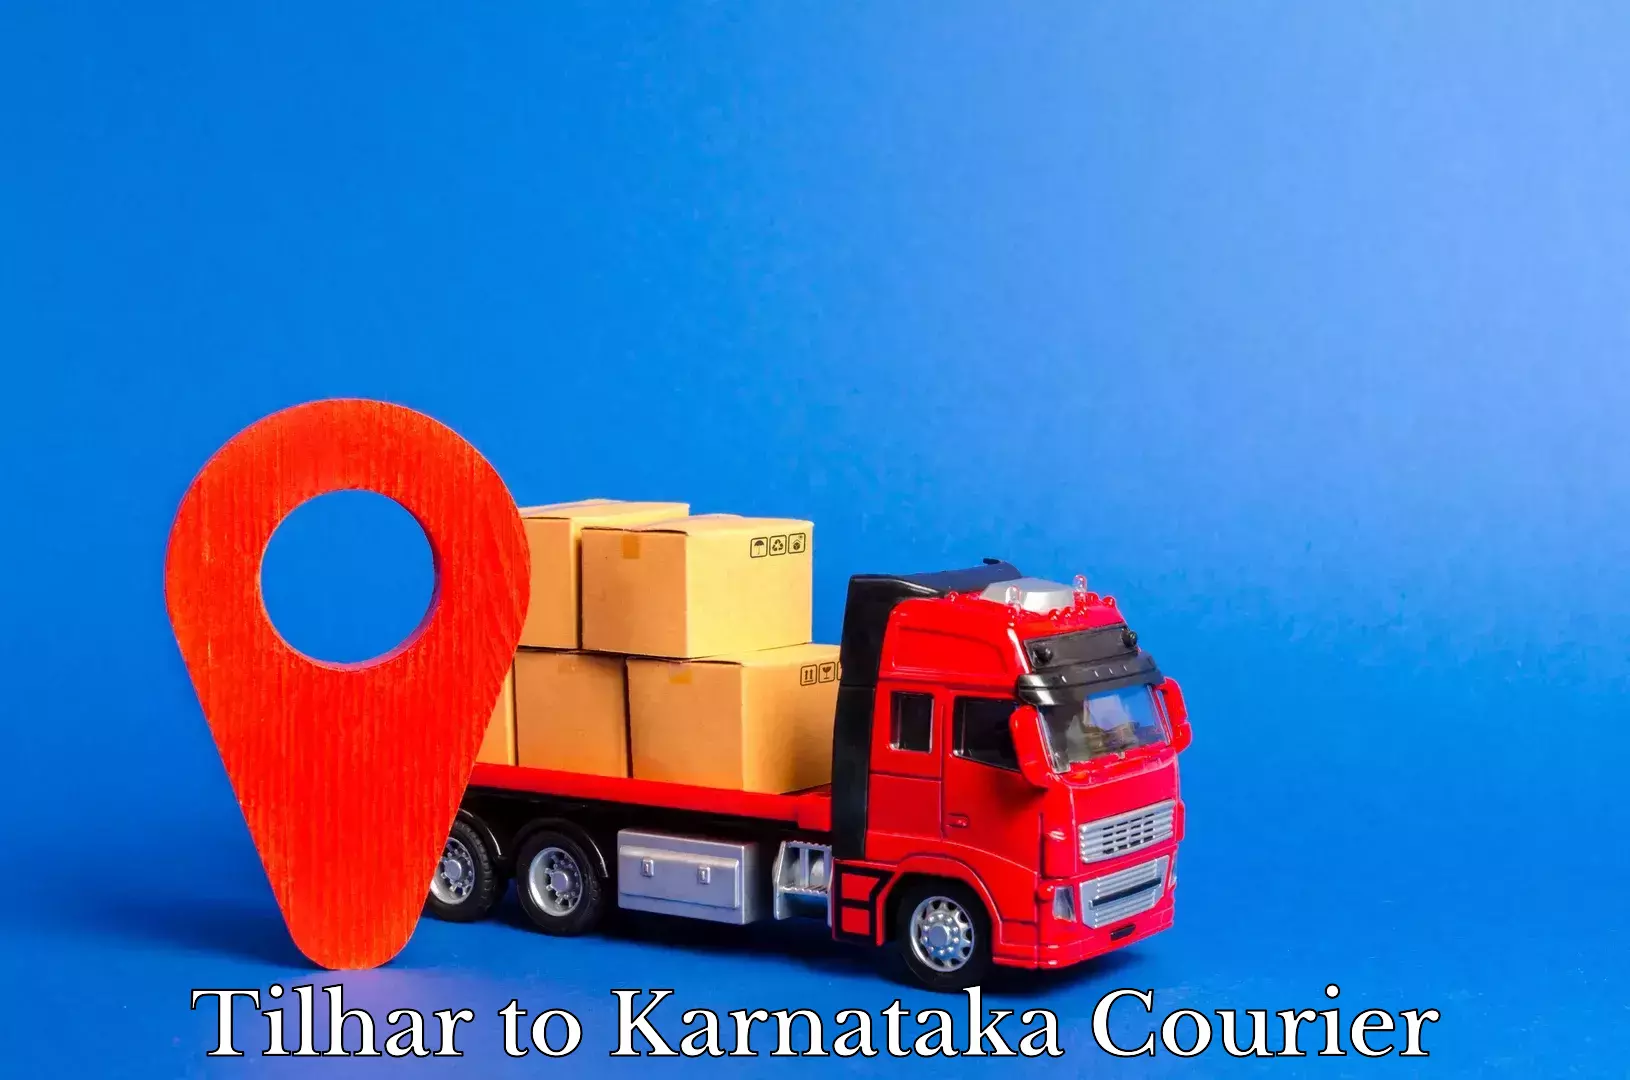 Cash on delivery service in Tilhar to Karnataka